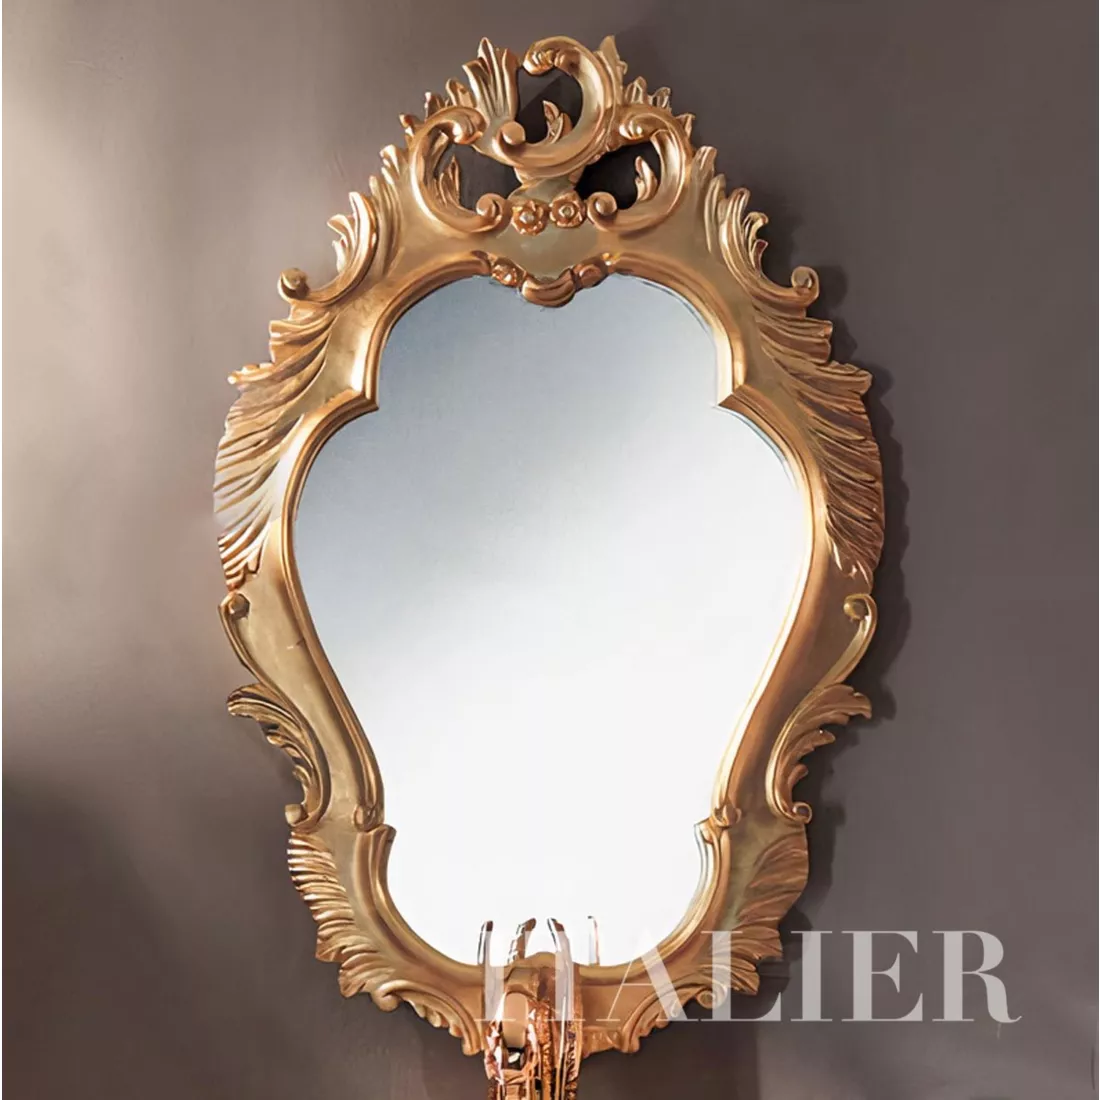 Luxury-bath-with-two-basin-and-gold-mirror-Villa-Venezia-collection-Modenese-Gastone_auto_x2